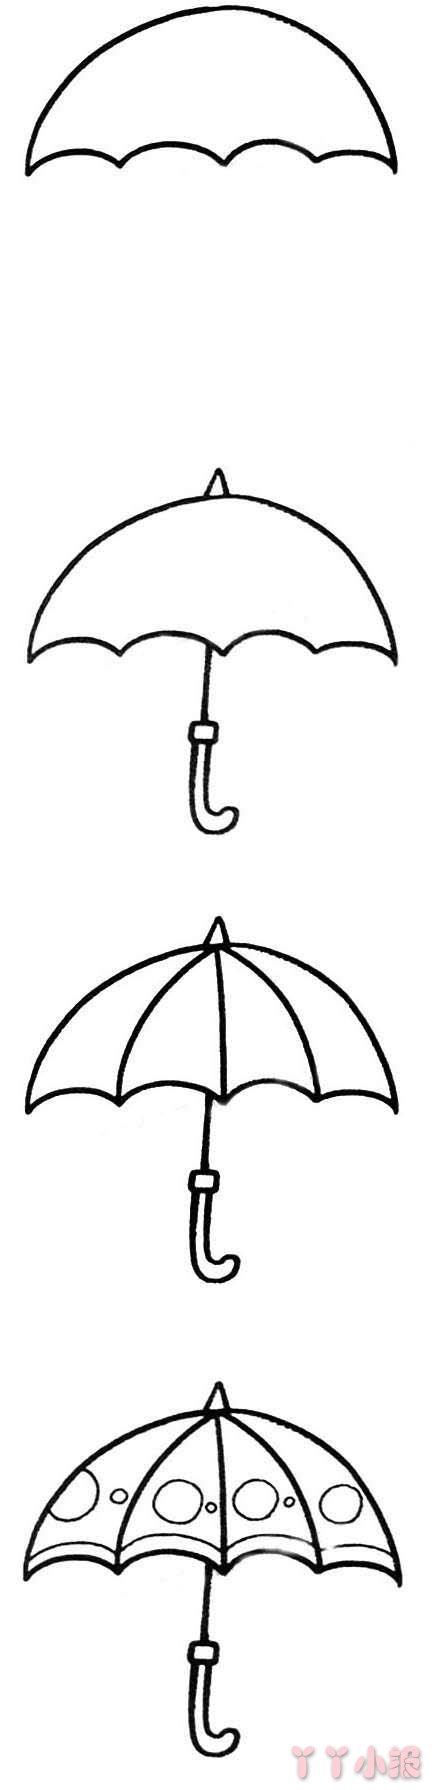 雨伞简笔画的画法步骤教程涂色简单好看